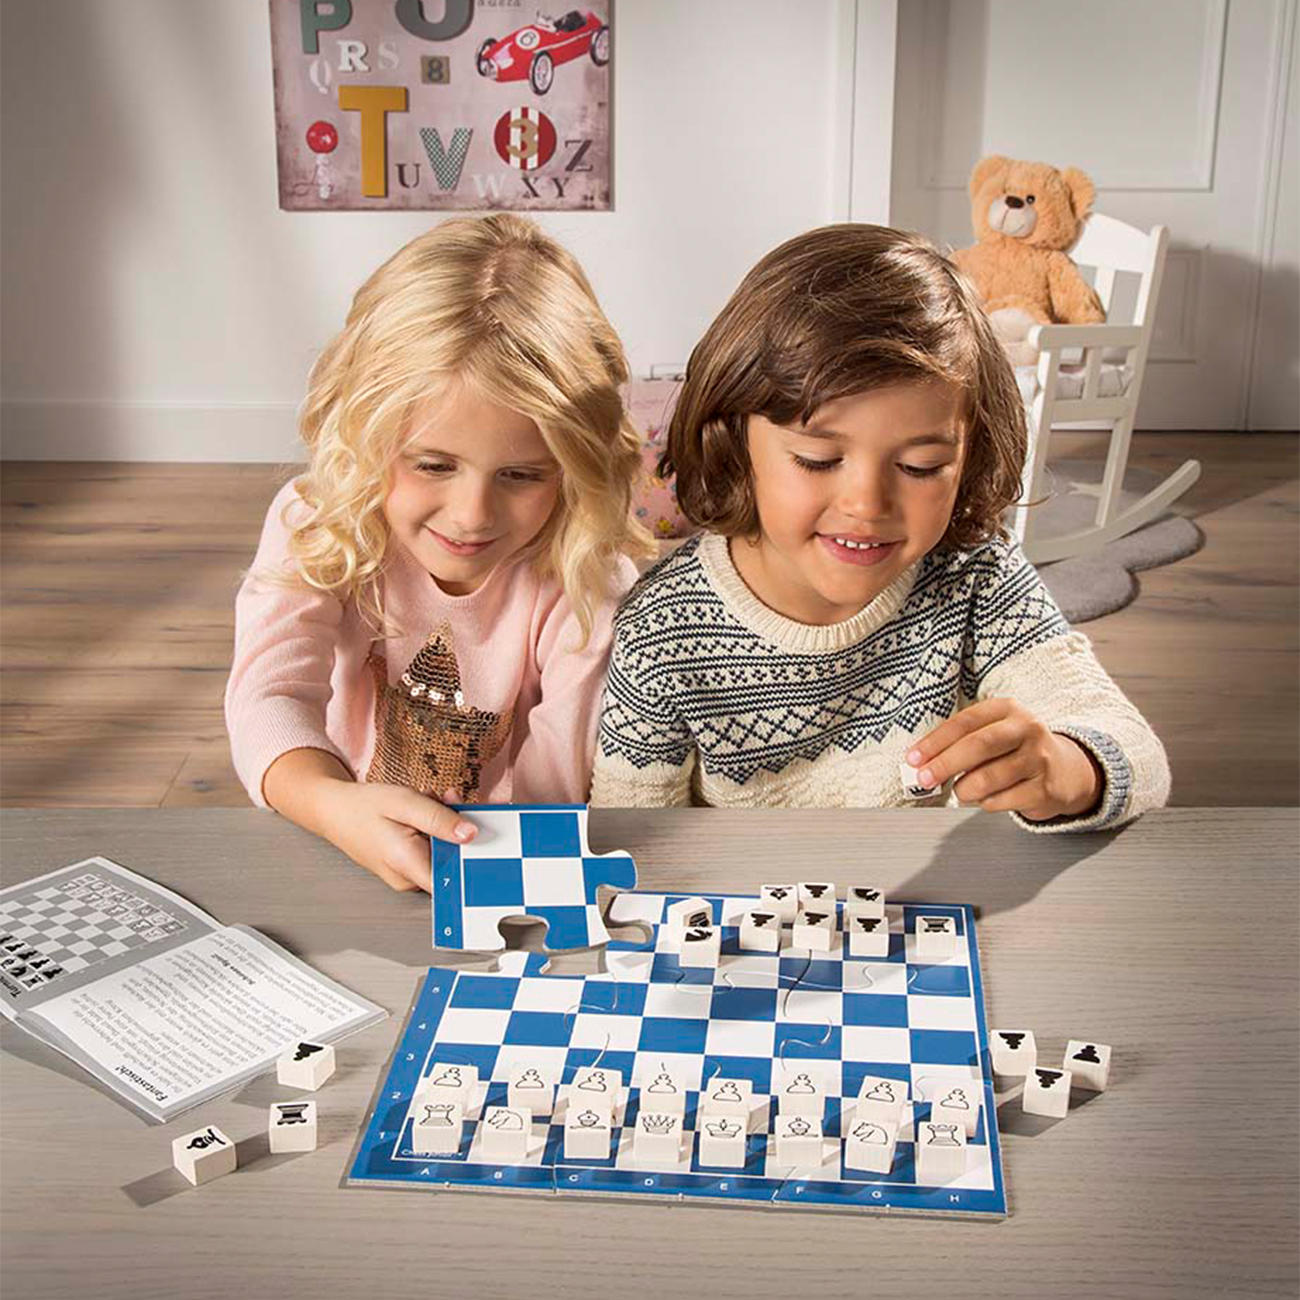 Schach für Kids pädagogisches Schach-Lernset mit Übungsheft für Kinder ab 3 